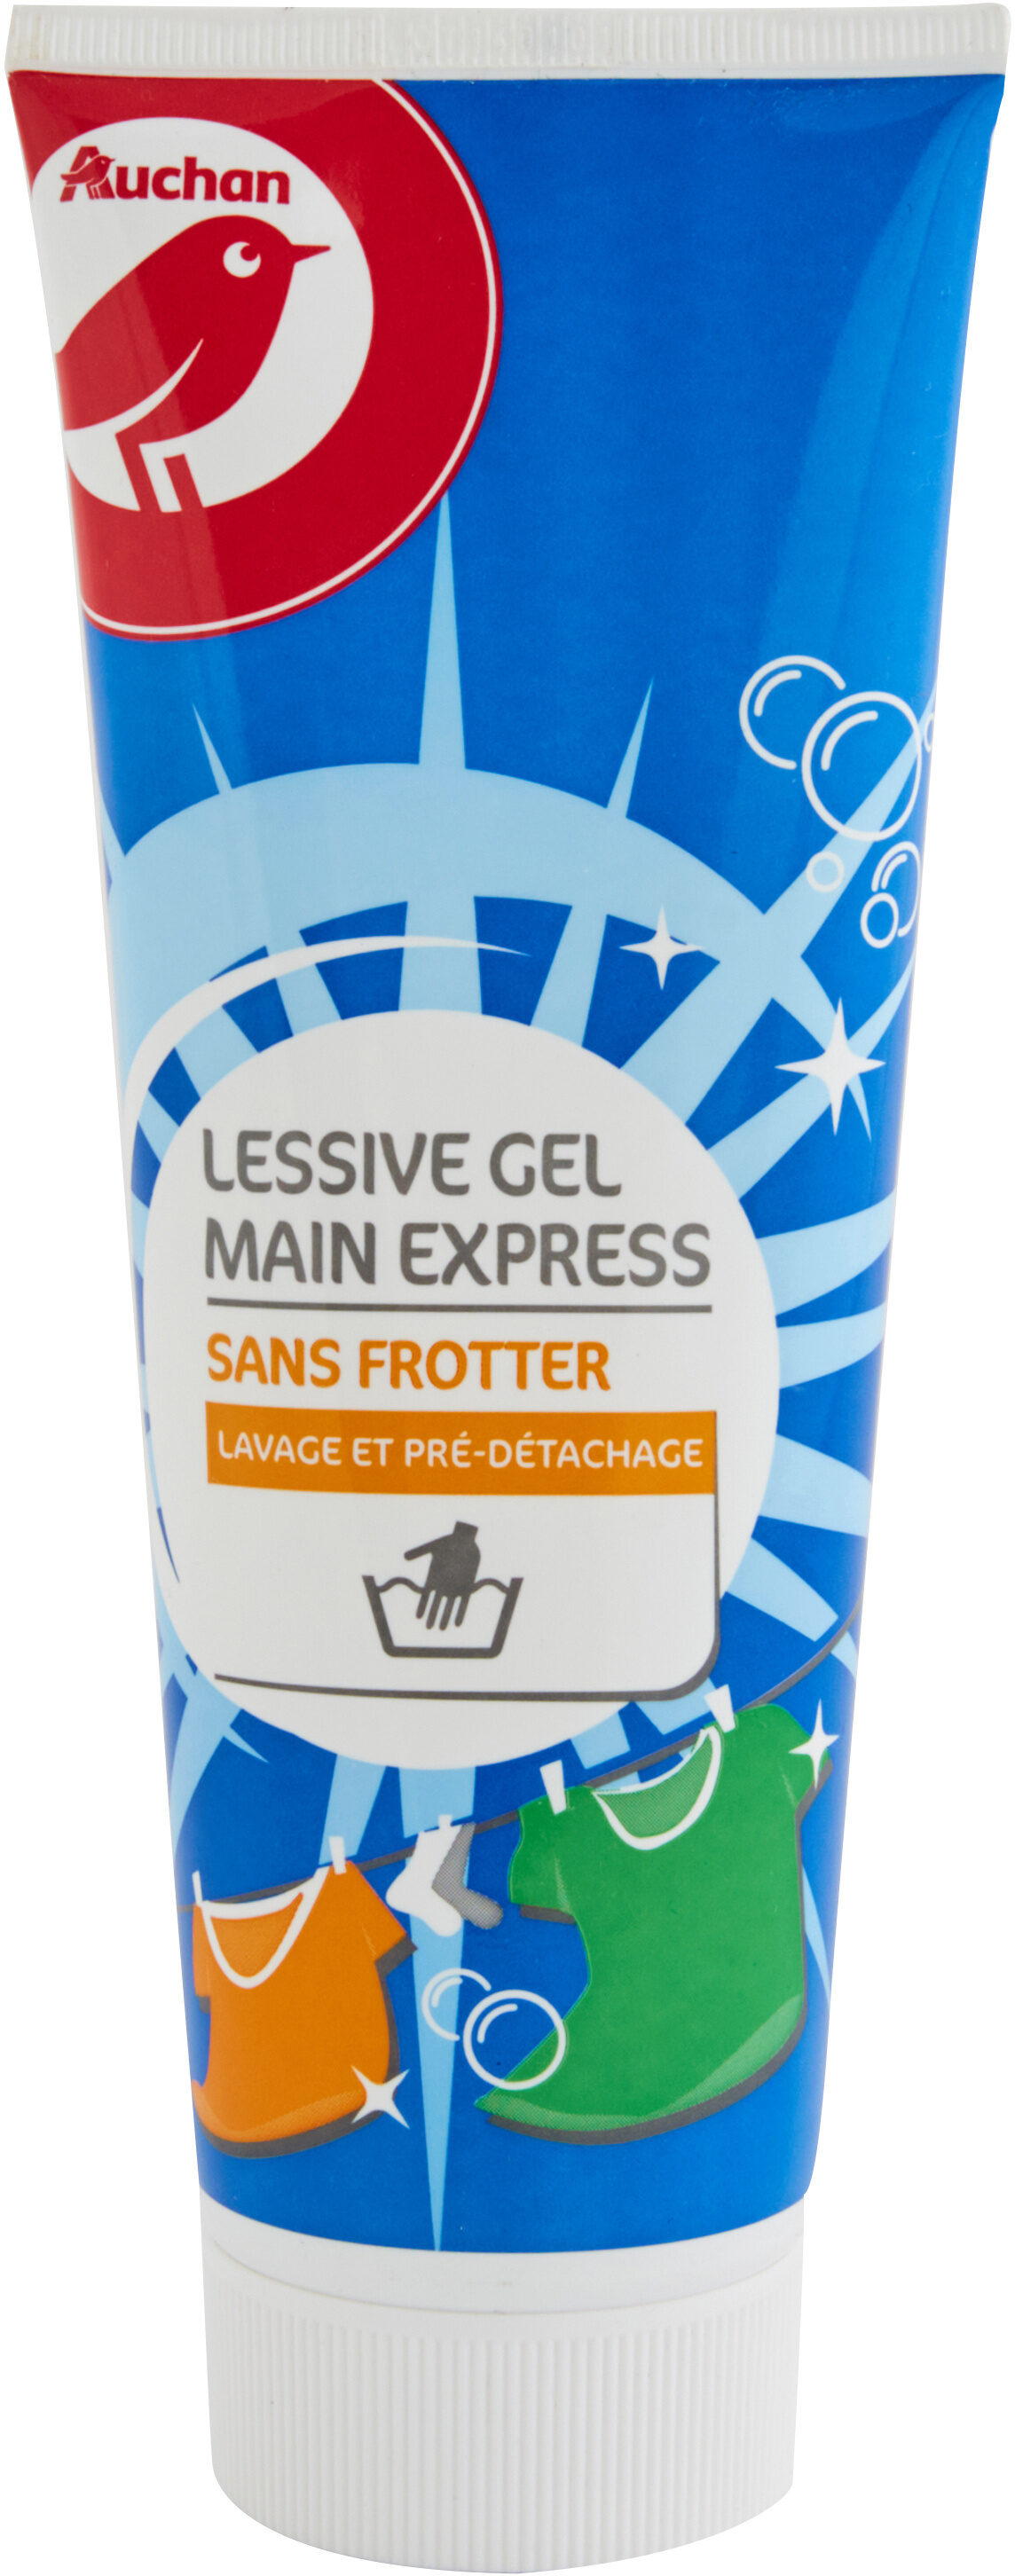 Lessive gel main en tube 250ml - Produit - fr